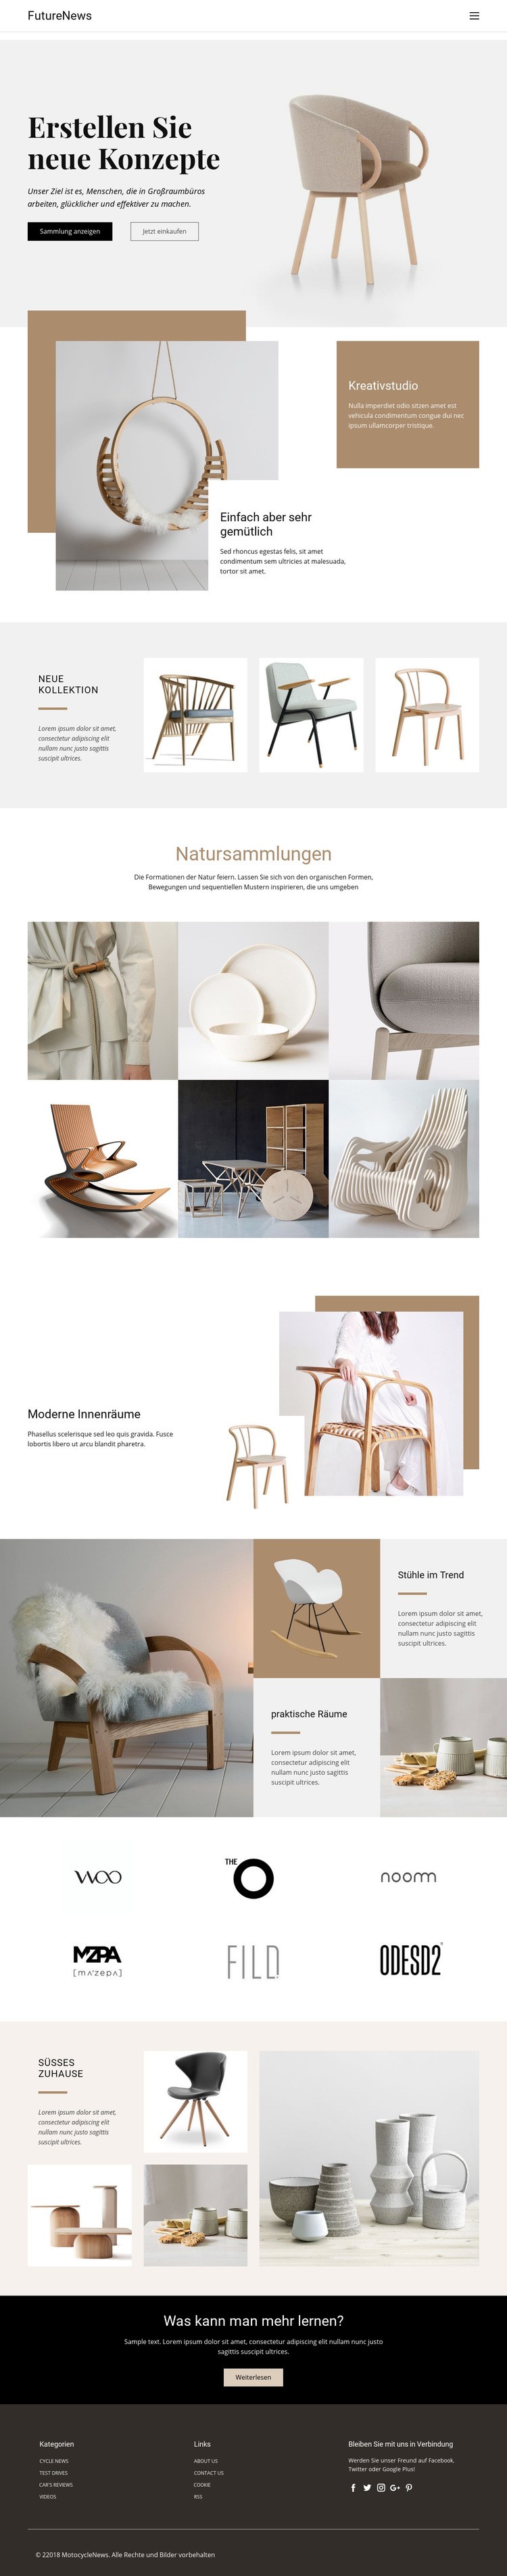 Modernes Wohninterieur Website design